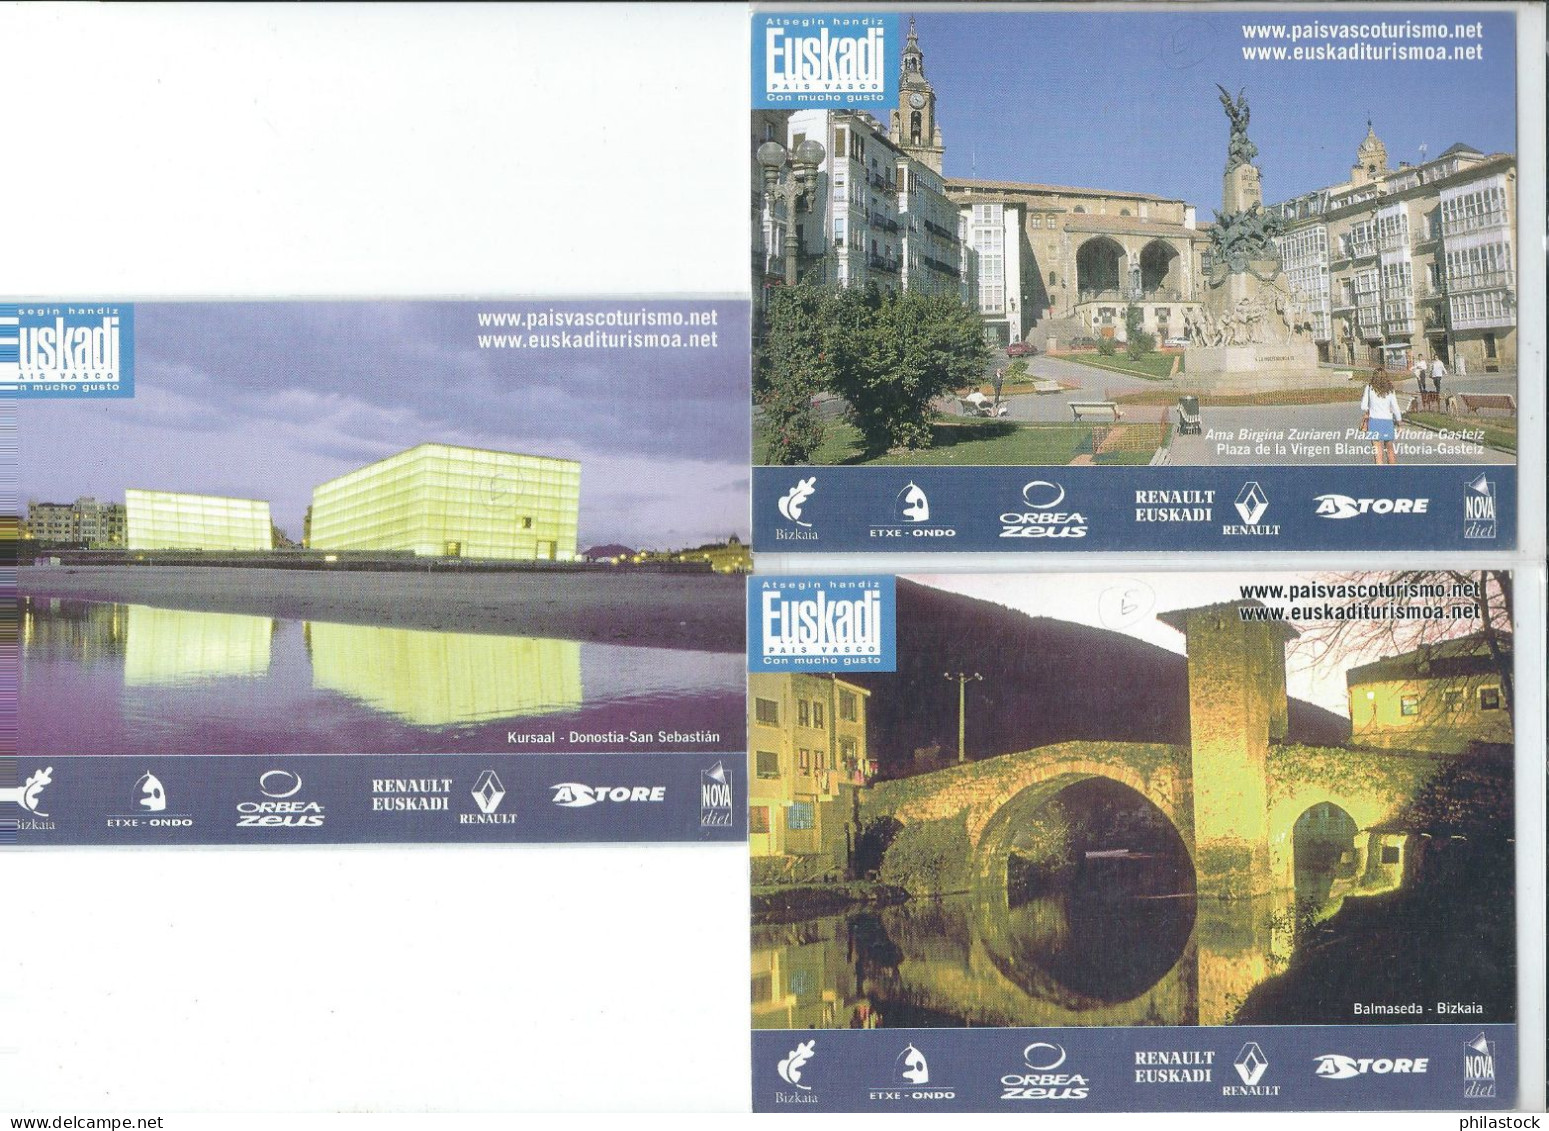 ESPAGNE série de 13 cartes publicitaires équipe cycliste espagnole